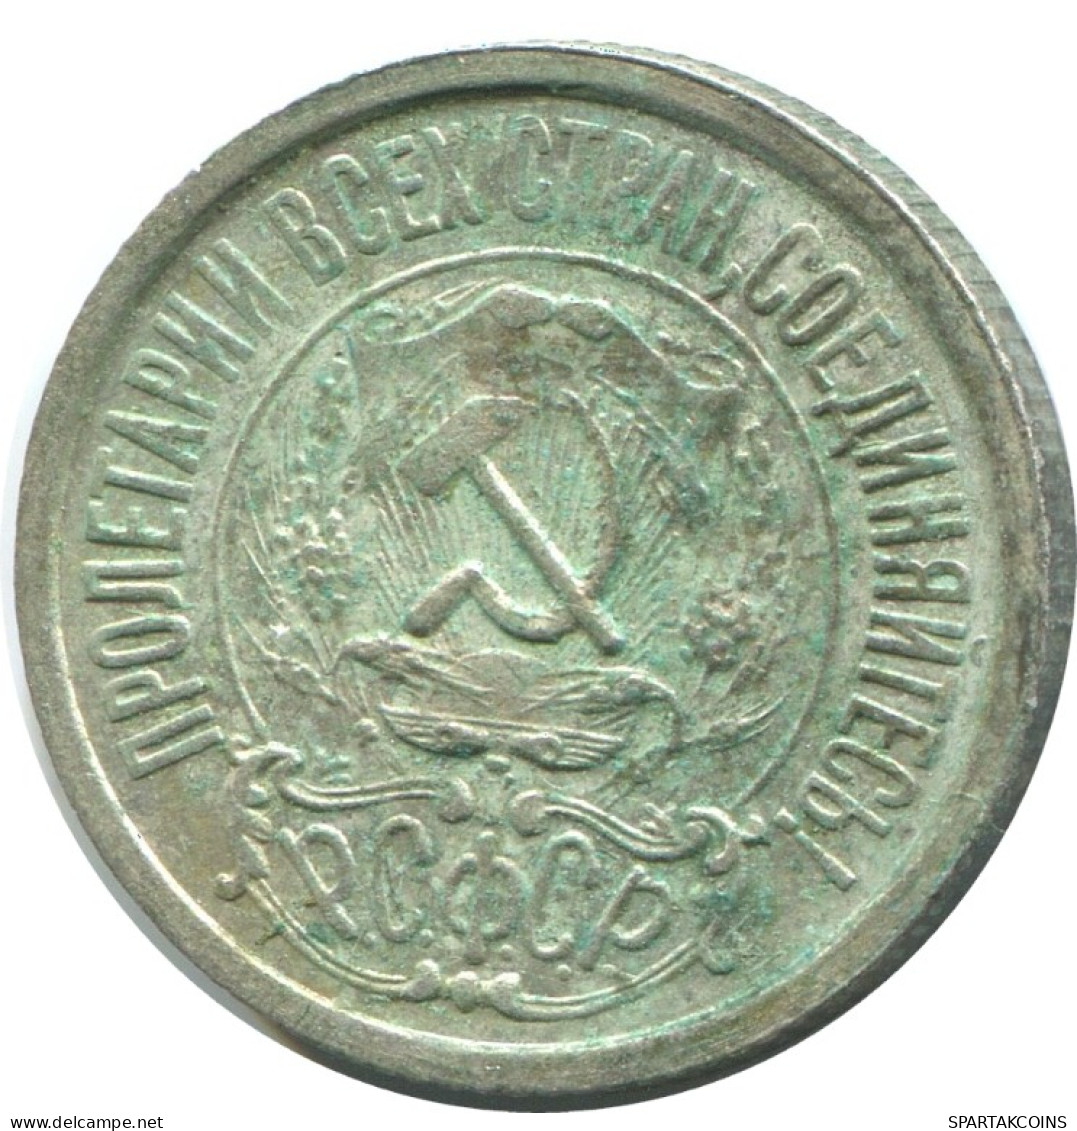 15 KOPEKS 1922 RUSSIA RSFSR SILVER Coin HIGH GRADE #AF224.4.U.A - Russland